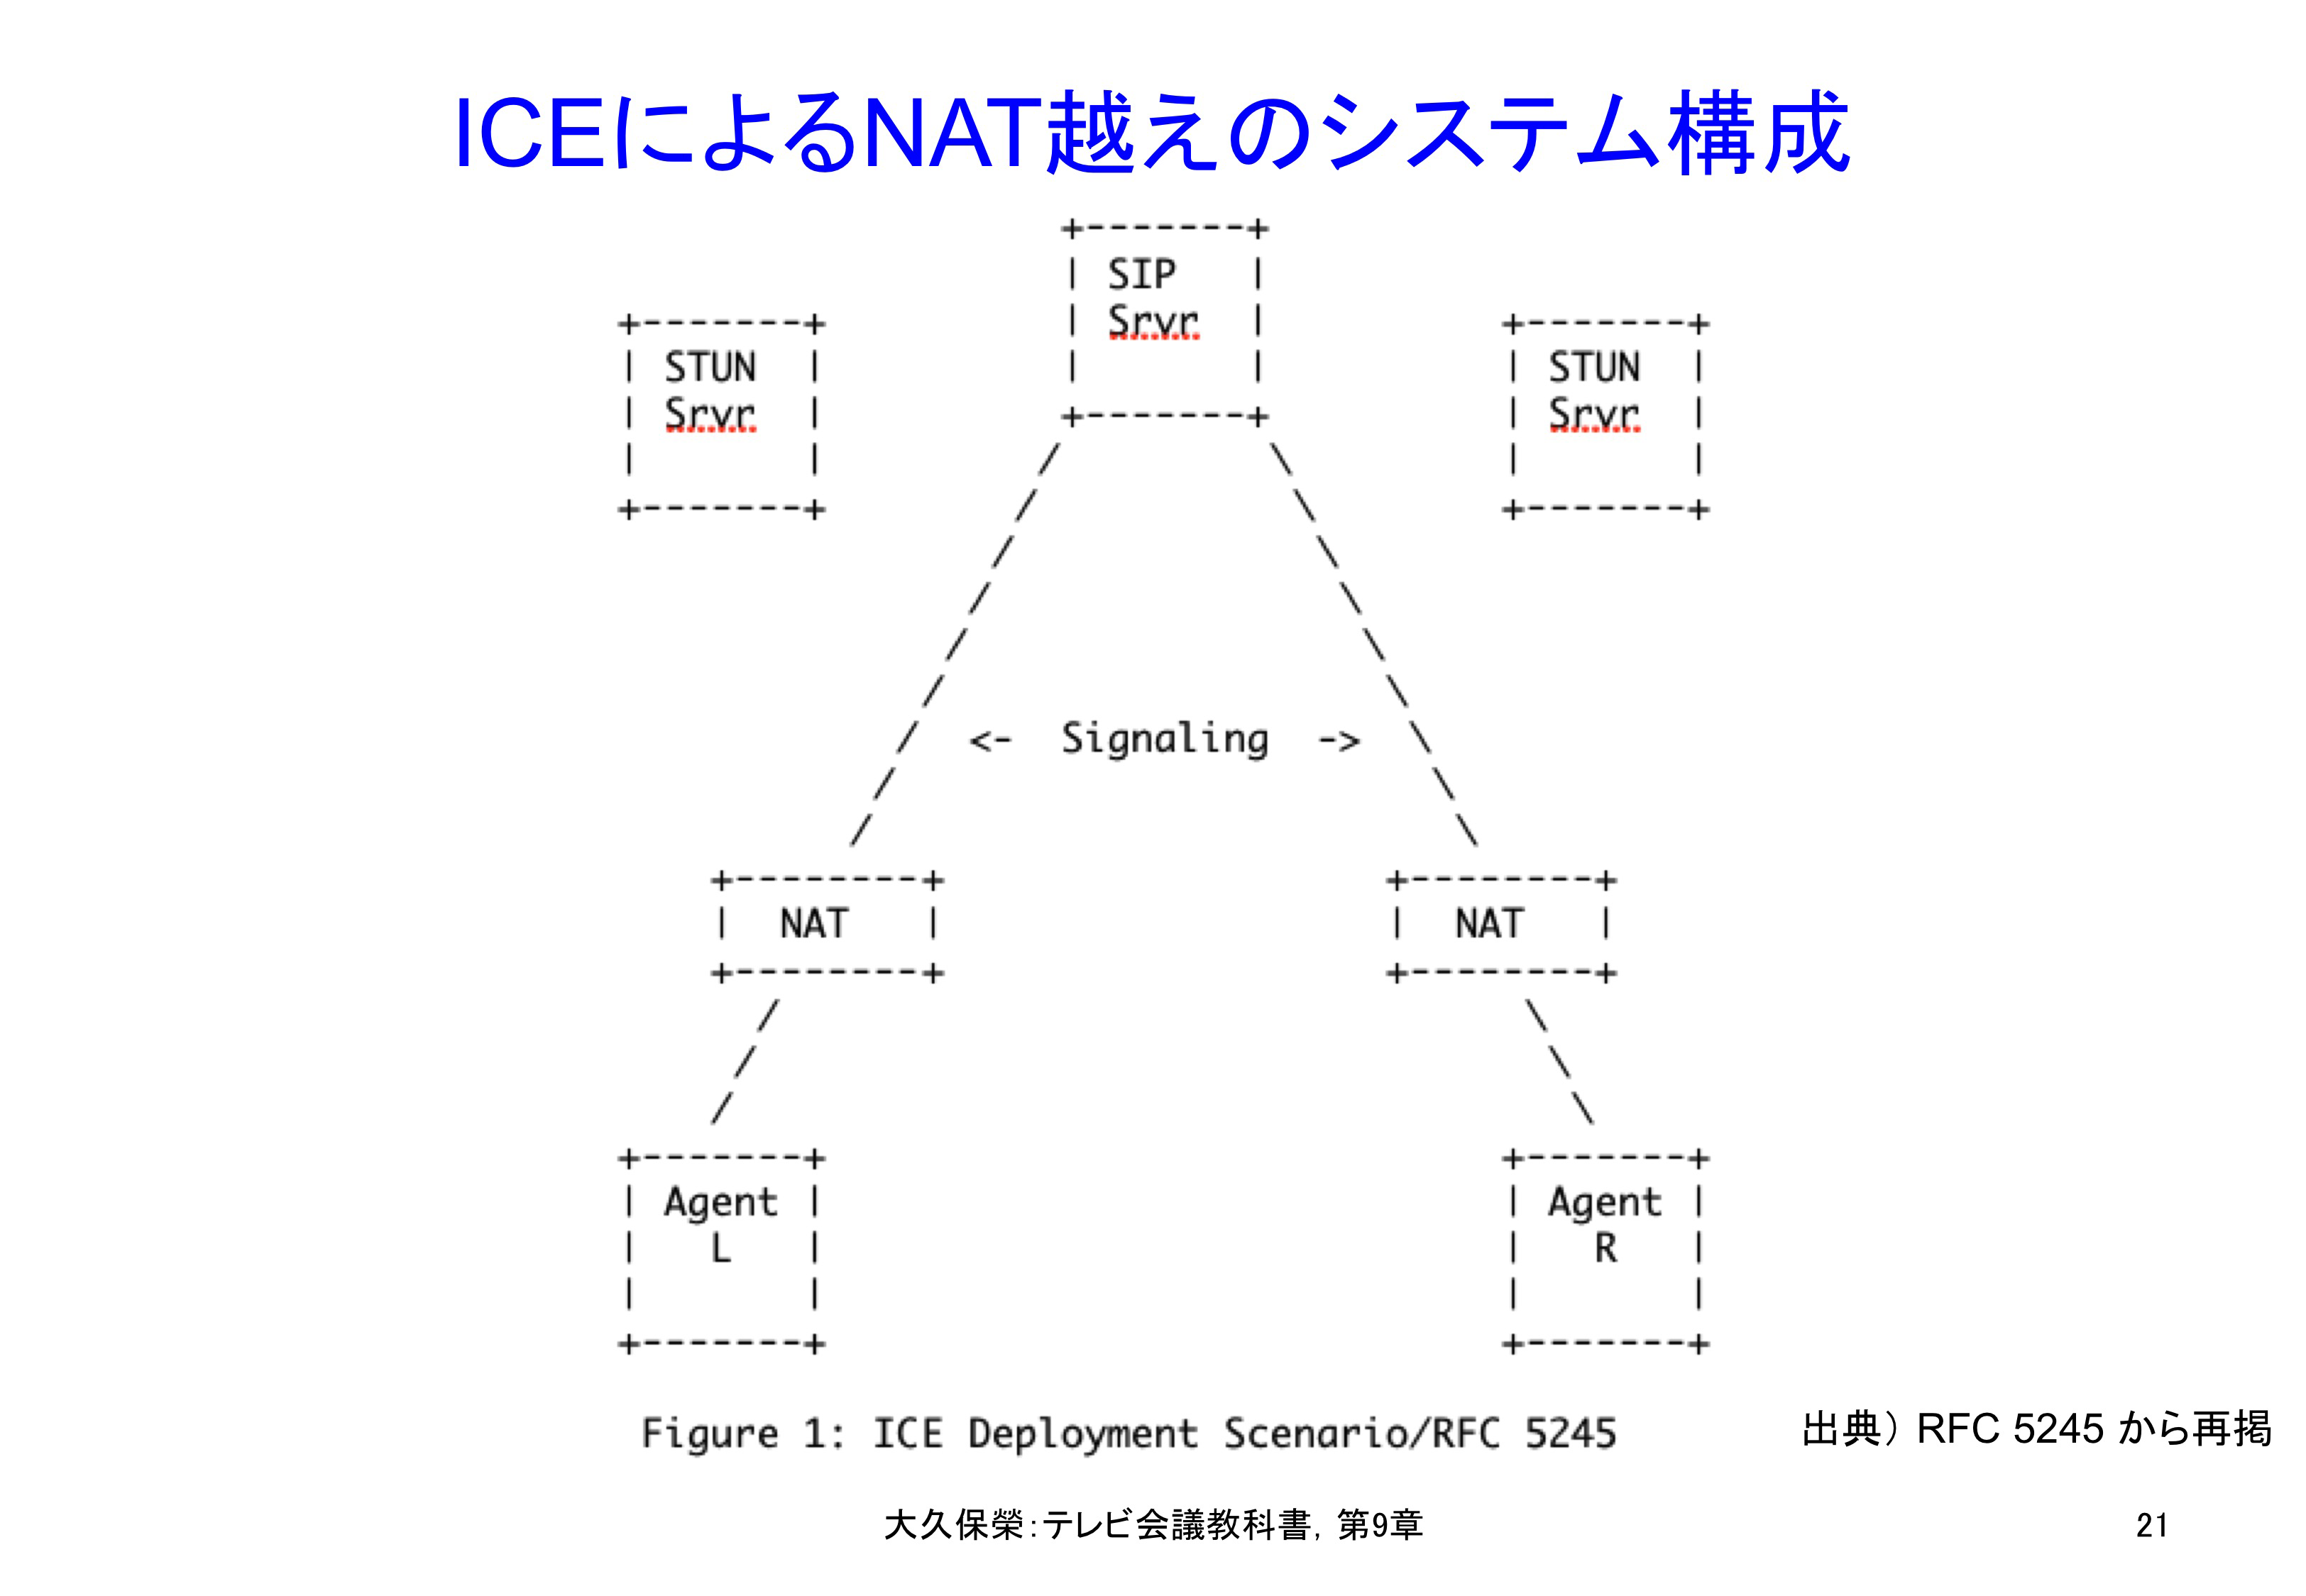 図9-21 ICEによるNAT越えのシステム構成